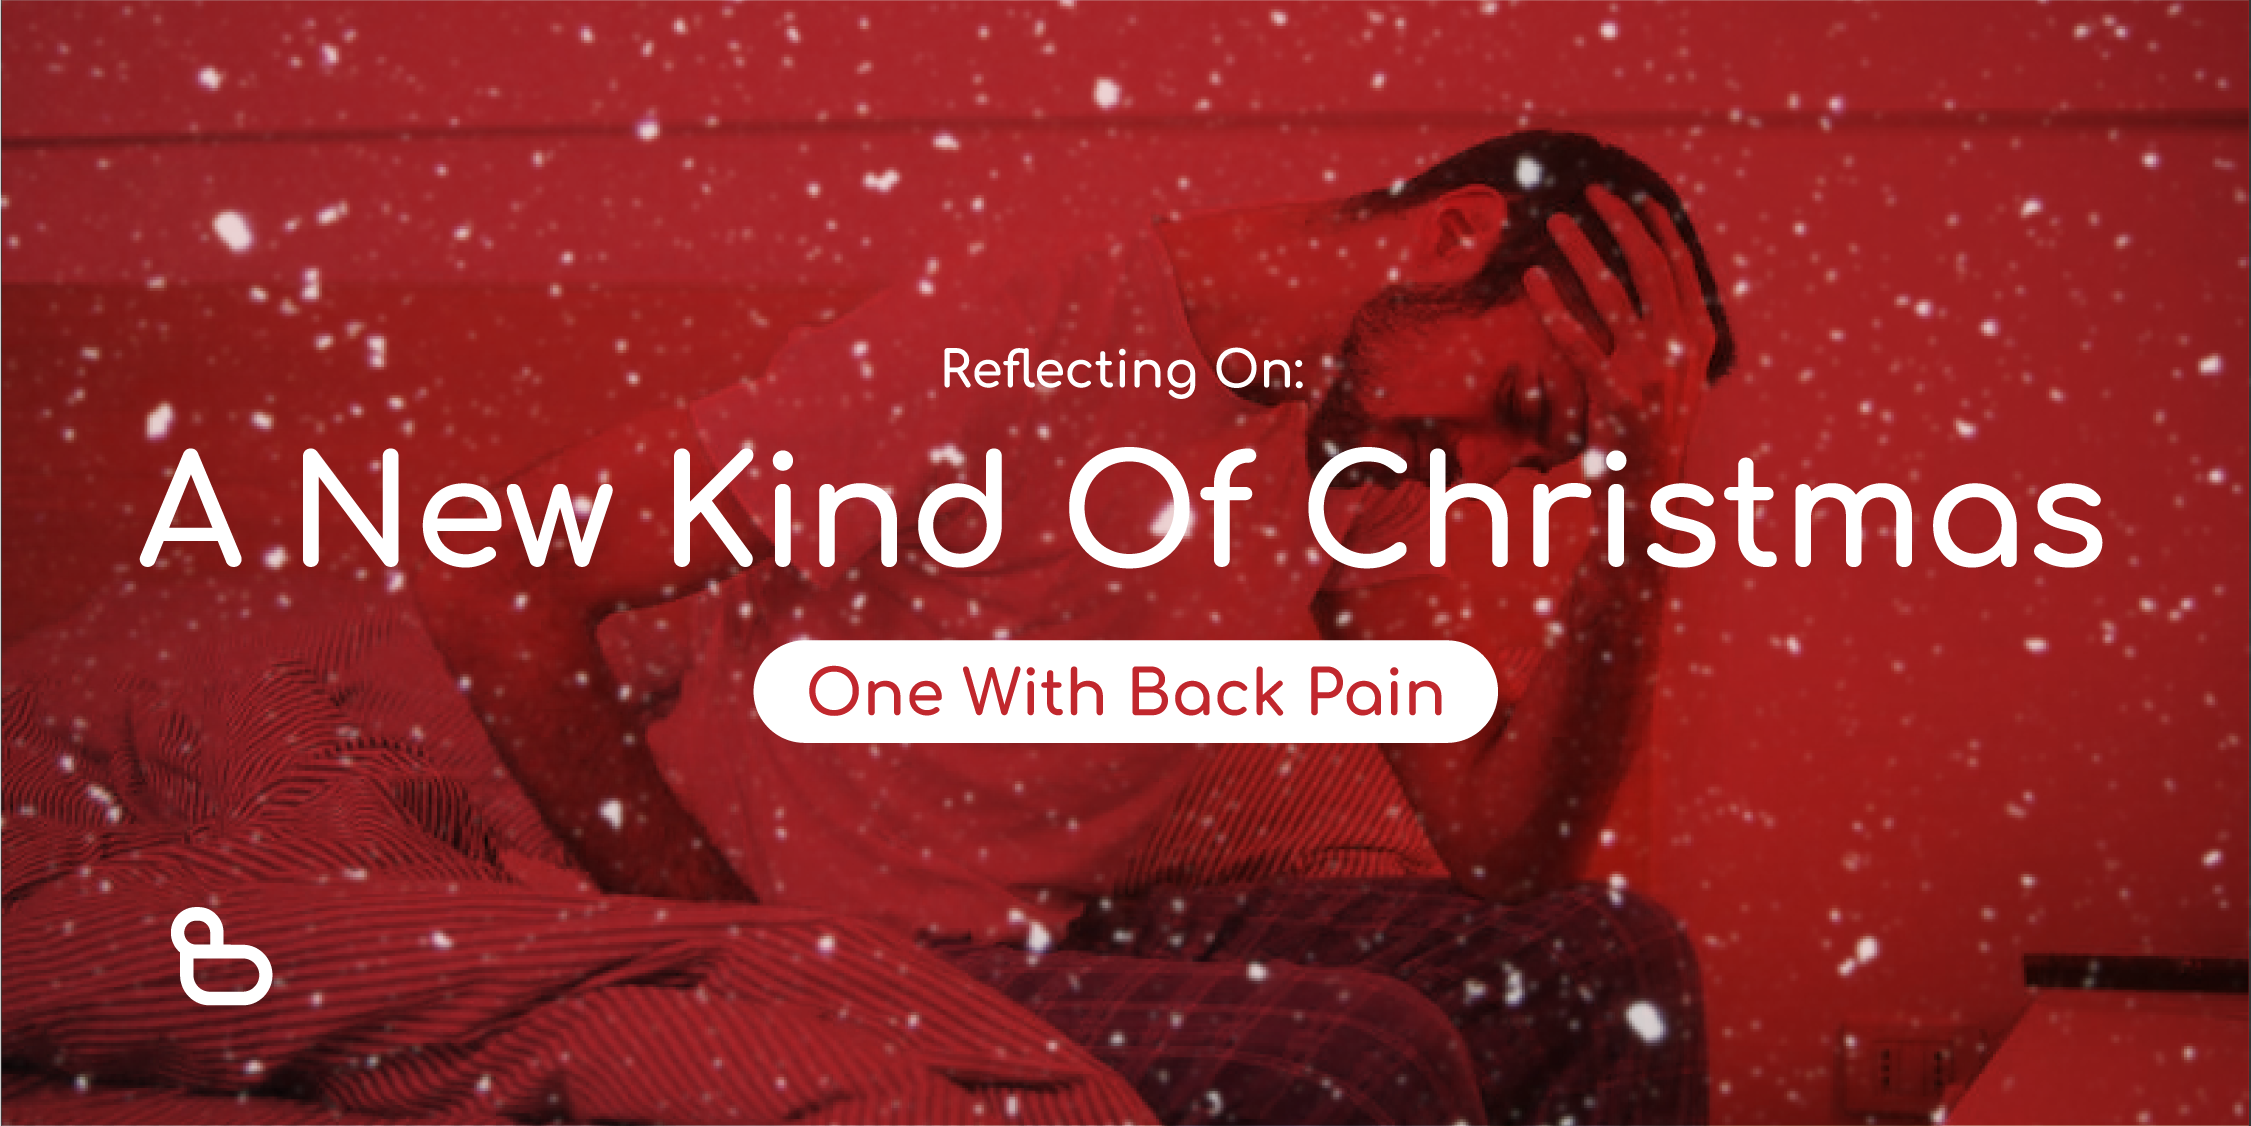 Back Pain at Christmas